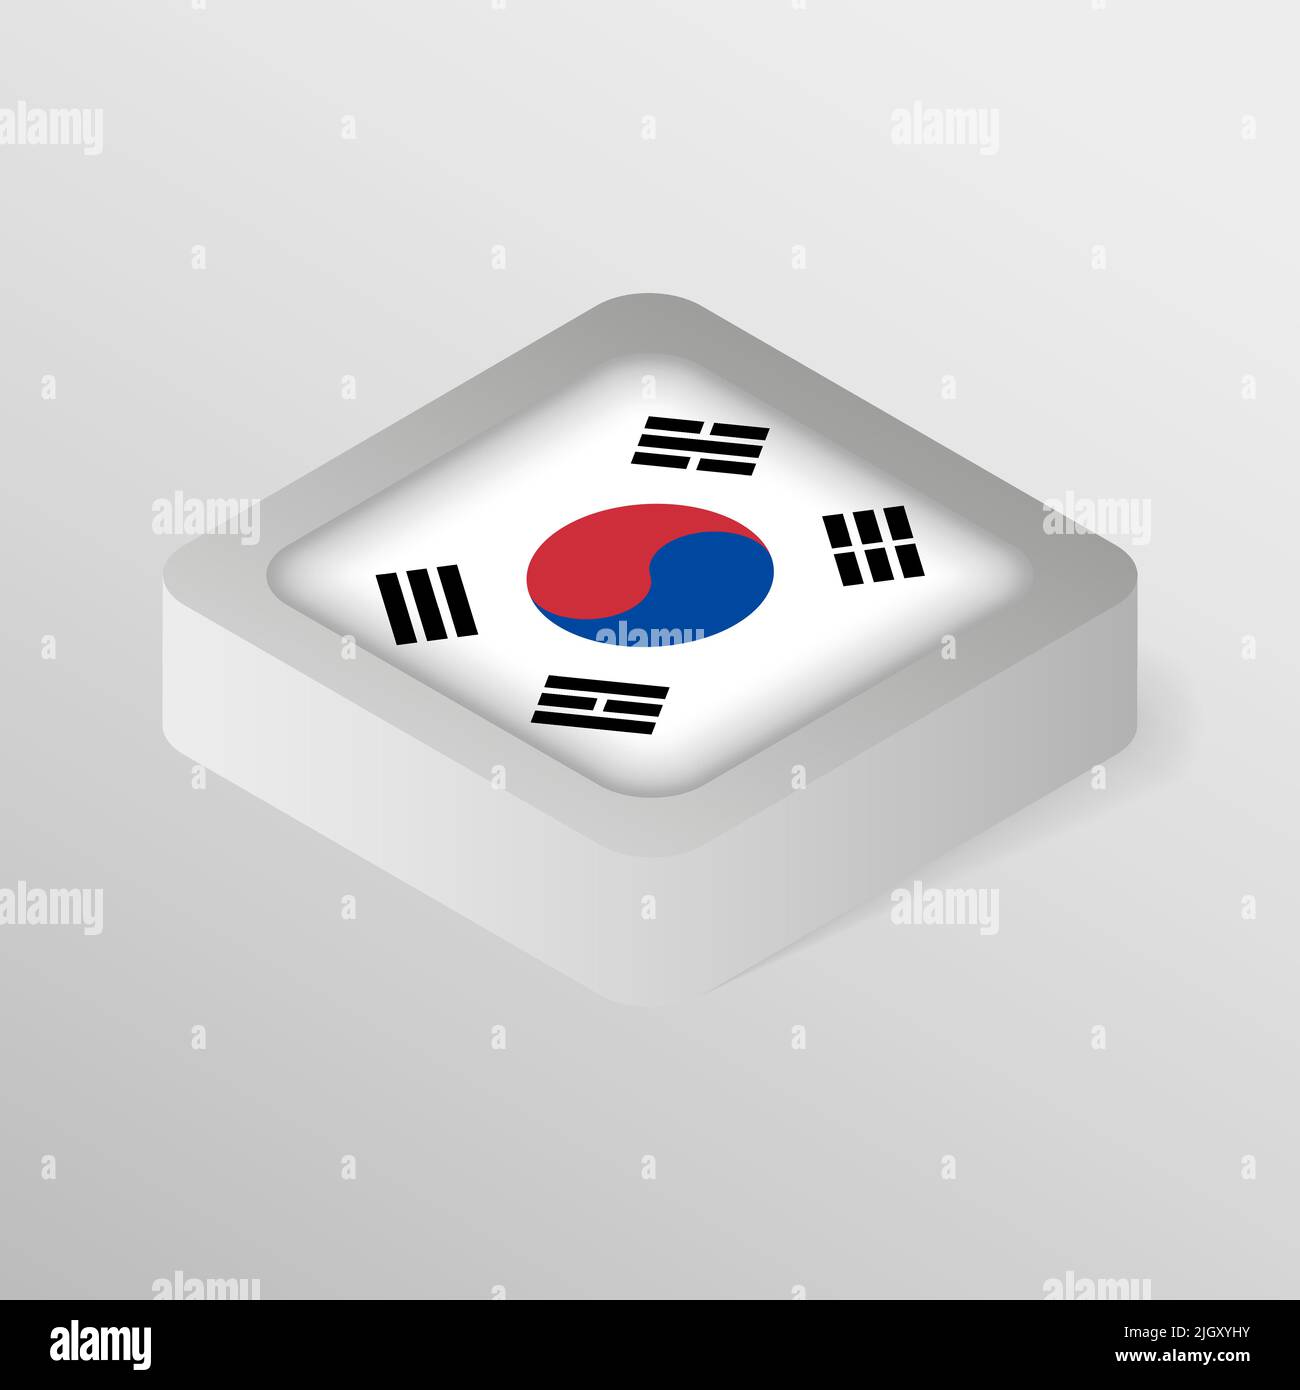 EPS10 Vektor Patriotisches Schild mit Flagge Südkoreas. Ein Element der Wirkung für die Verwendung, die Sie daraus machen möchten. Stock Vektor